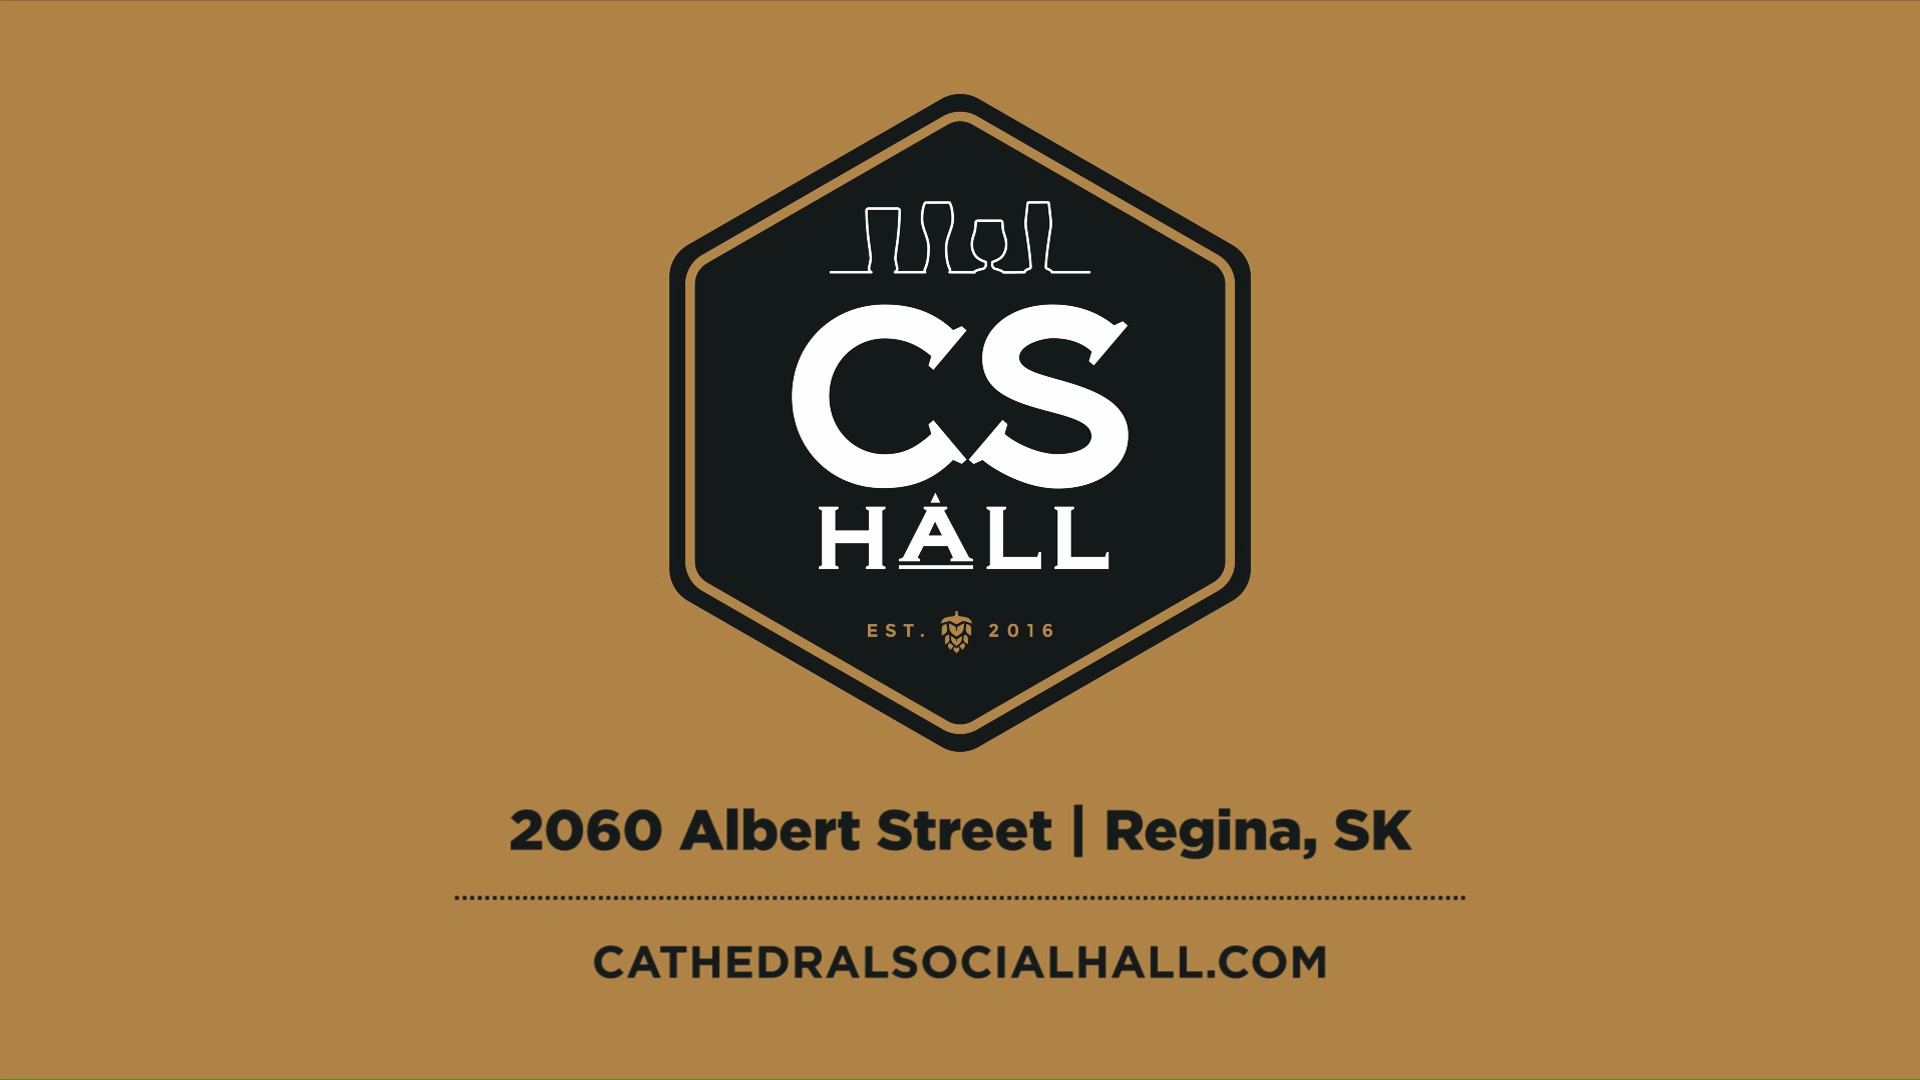 Cathedral Social Hall, Social, Cathedral Social Hall - Team - Ryan, Portfolio Image, Great Beer. 30 Draught Beers on Tap.